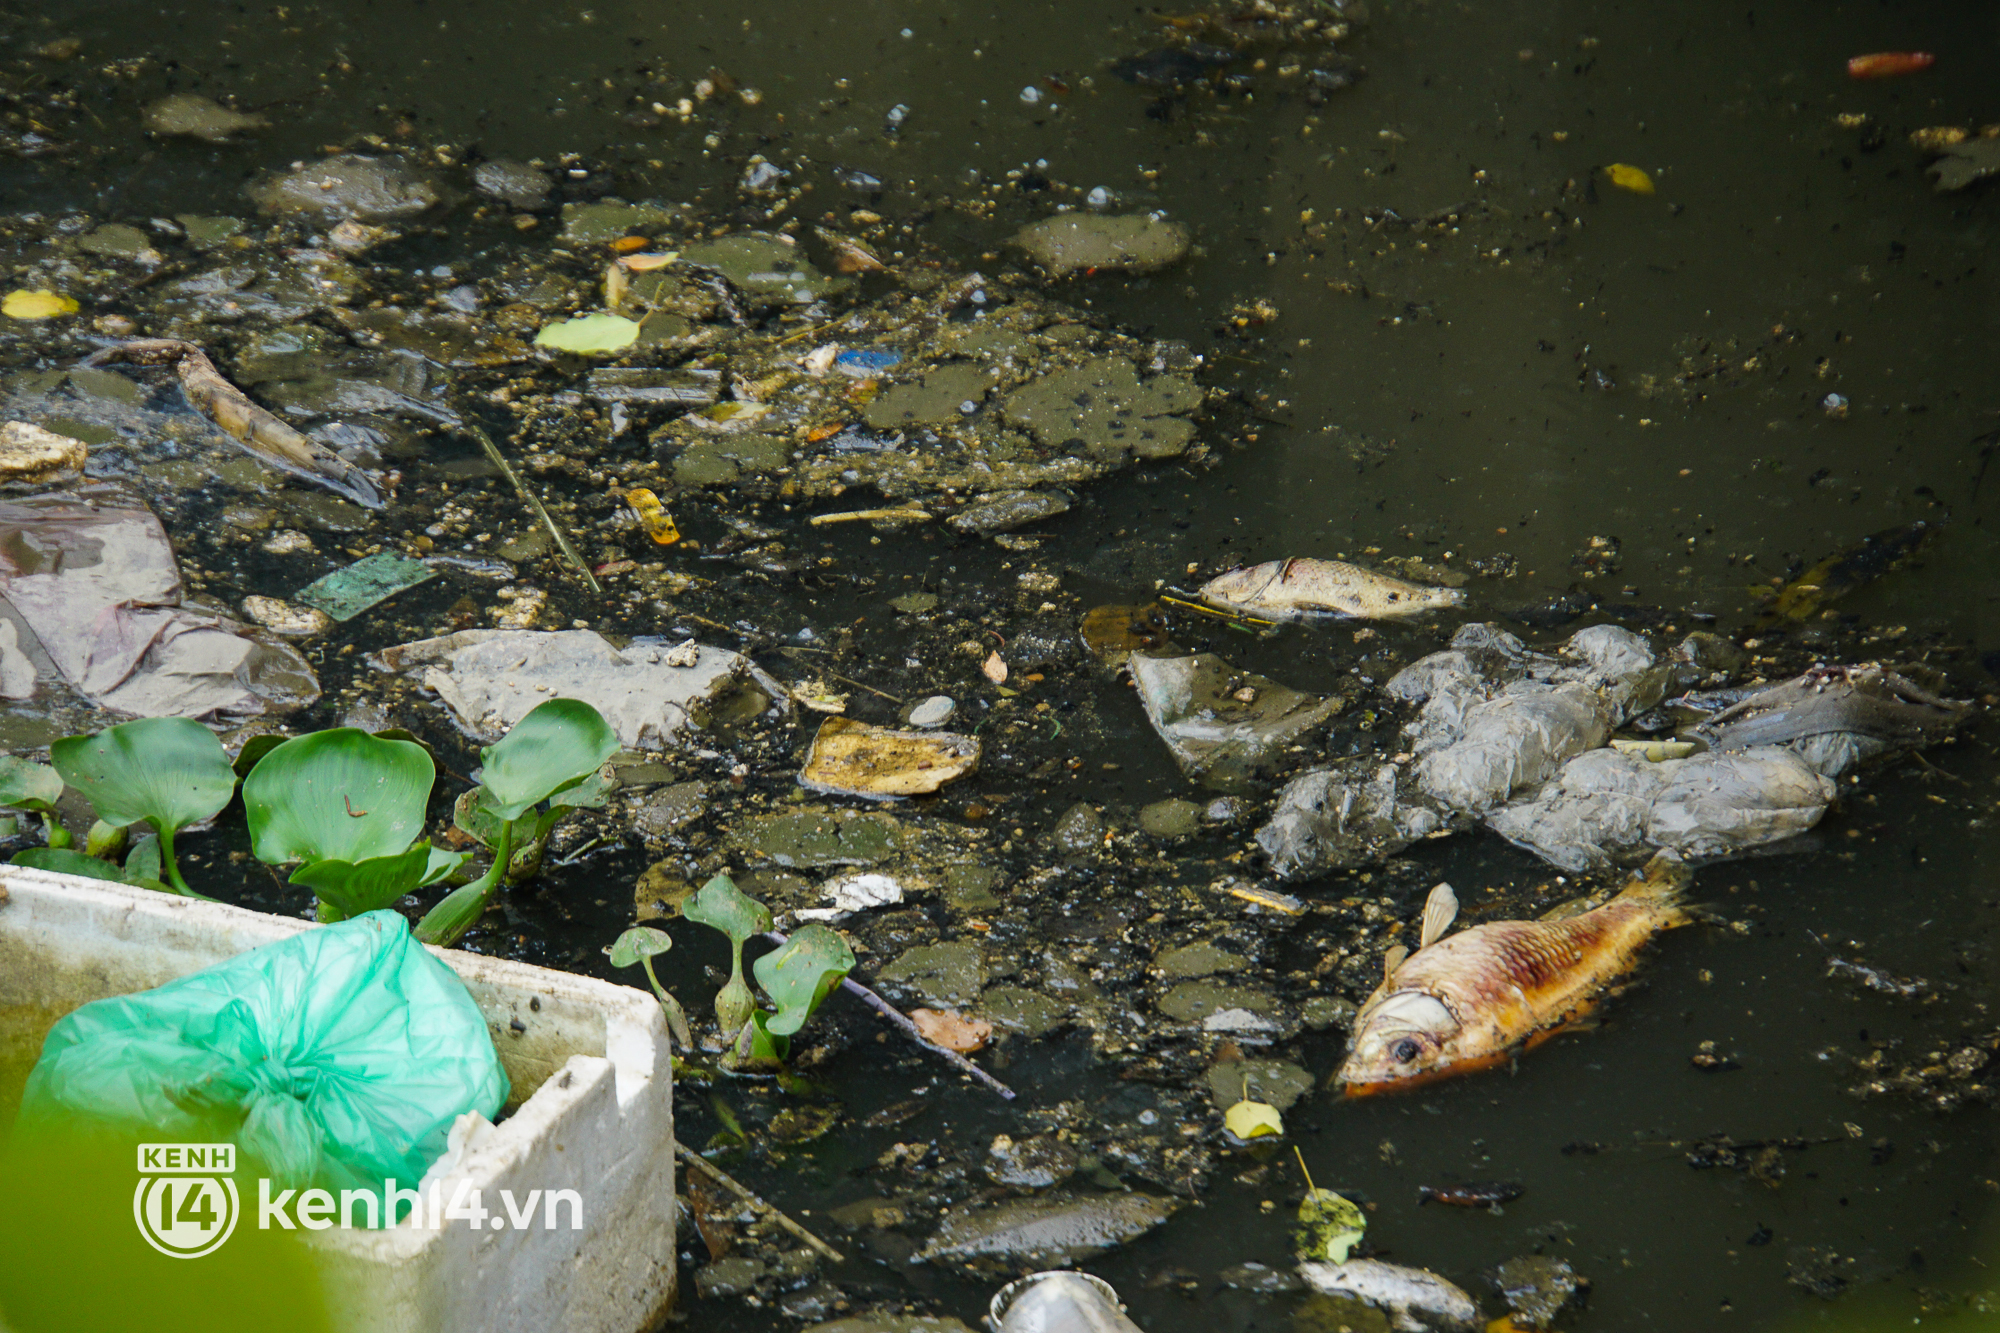 Cá chết lẫn trong rác thải nổi kín mặt kênh Nhiêu Lộc - Thị Nghè ở TP.HCM  - Ảnh 5.